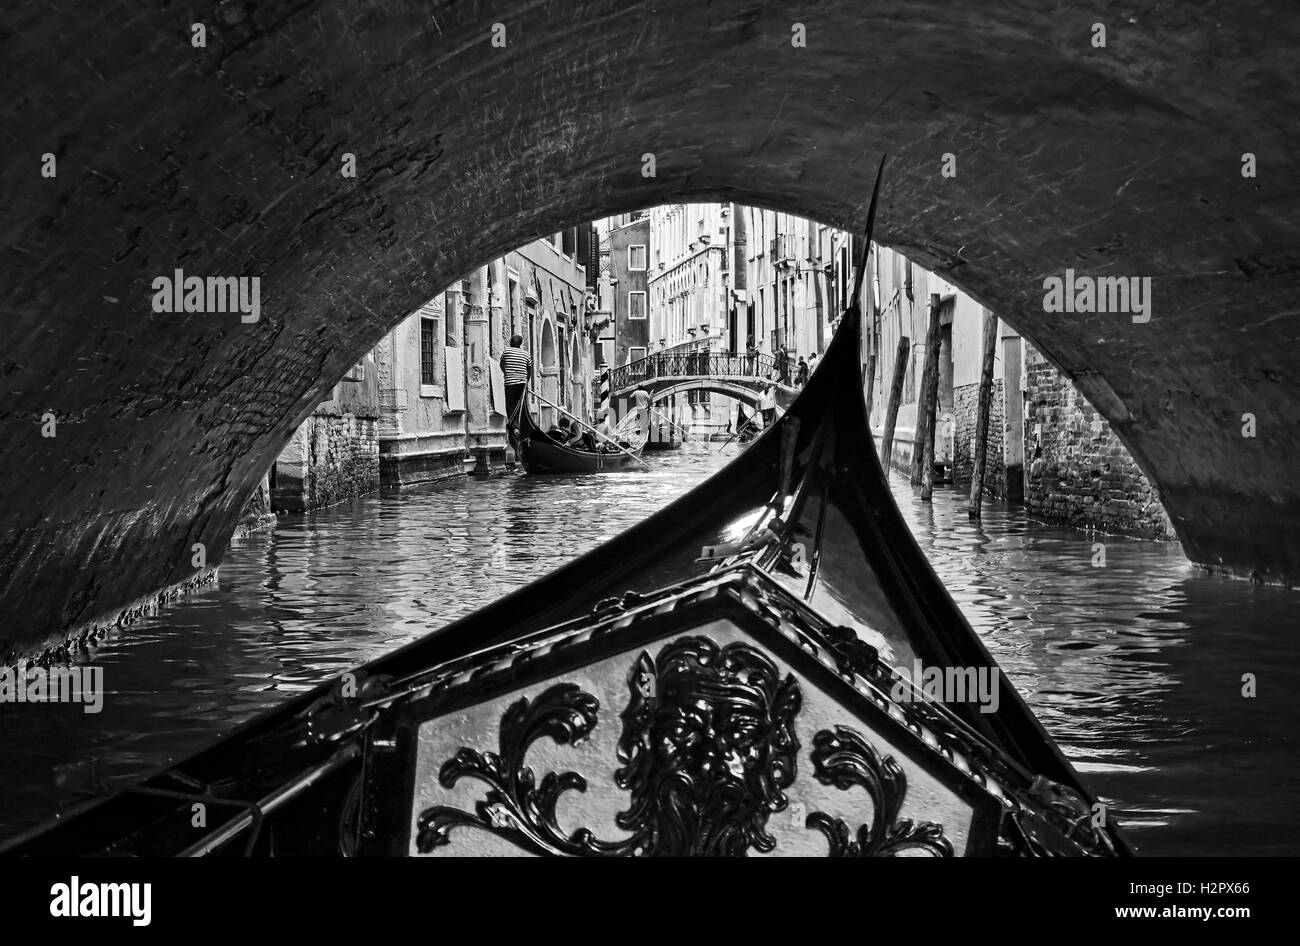 Bianco nero vista dall'interno gondola a Venezia passando sotto la città infinita di ponti sul turista occupato per via navigabile Foto Stock